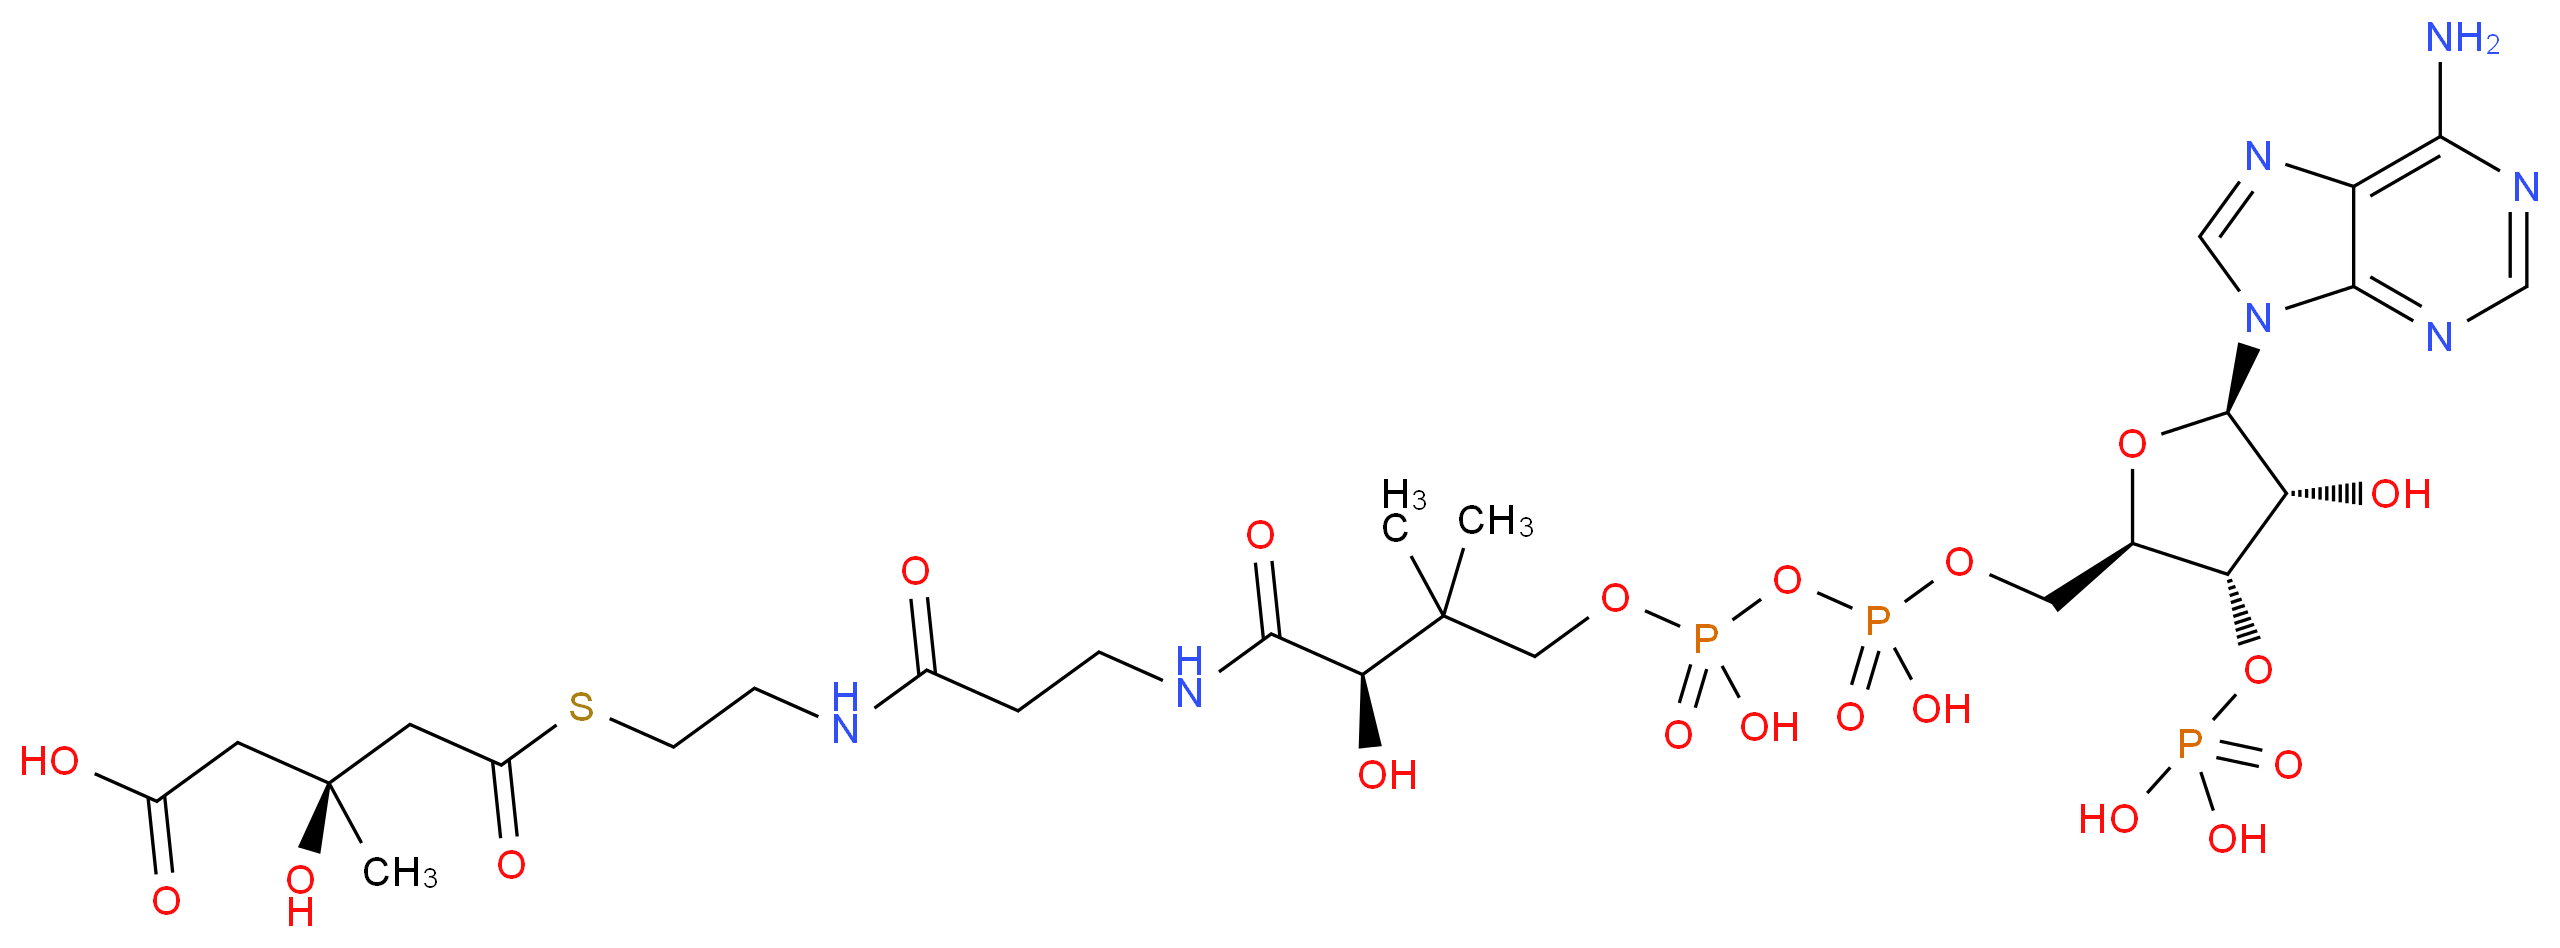 1553-55-5 molecular structure